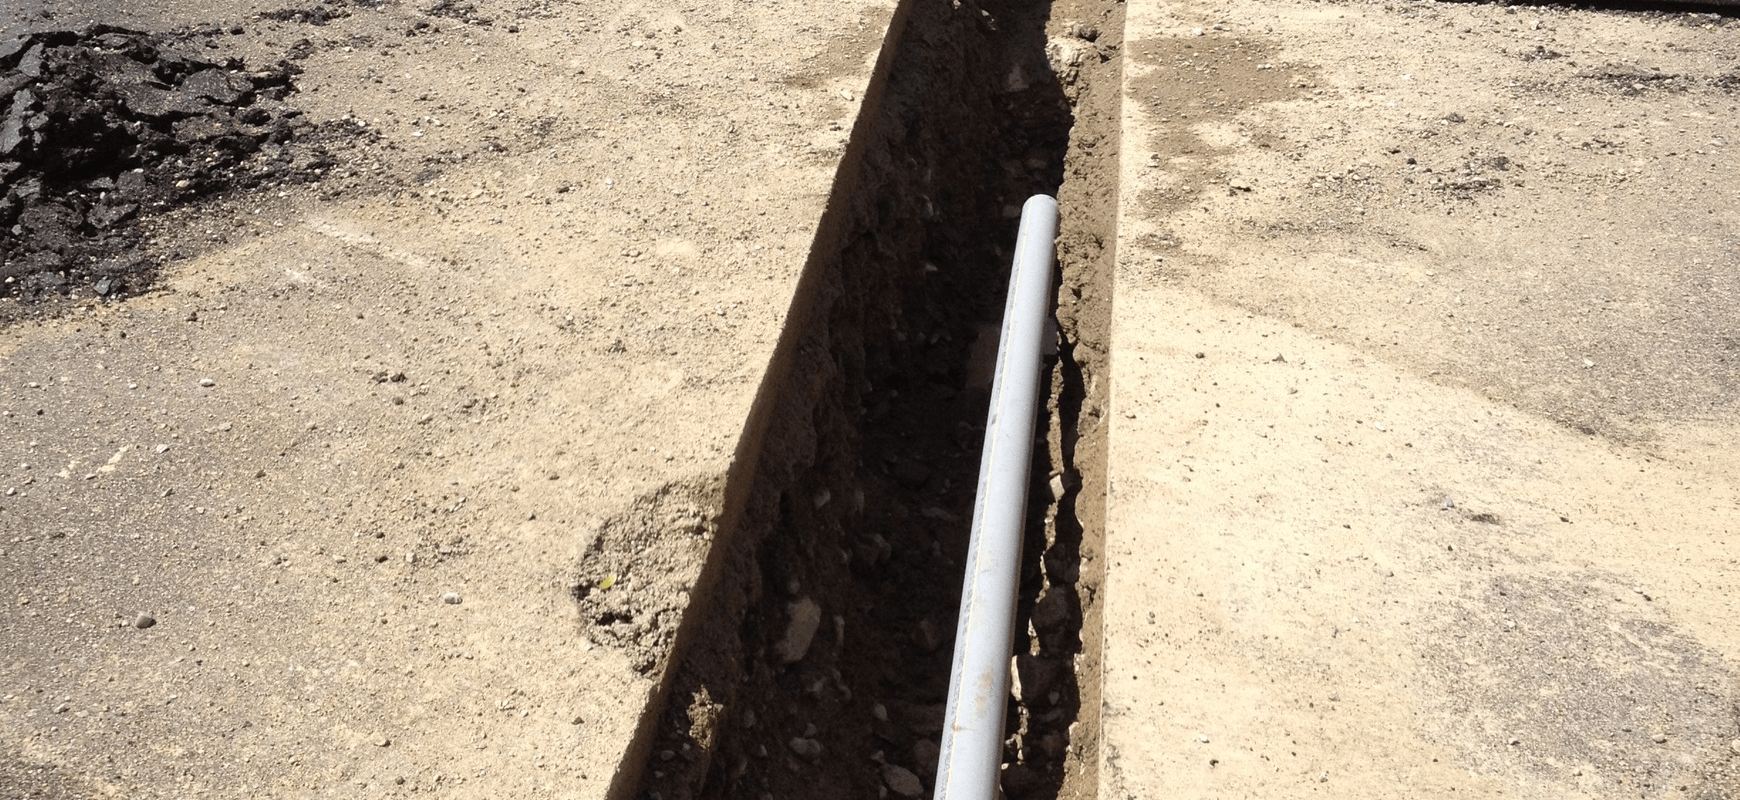 Trenching excavation Danbury, CT